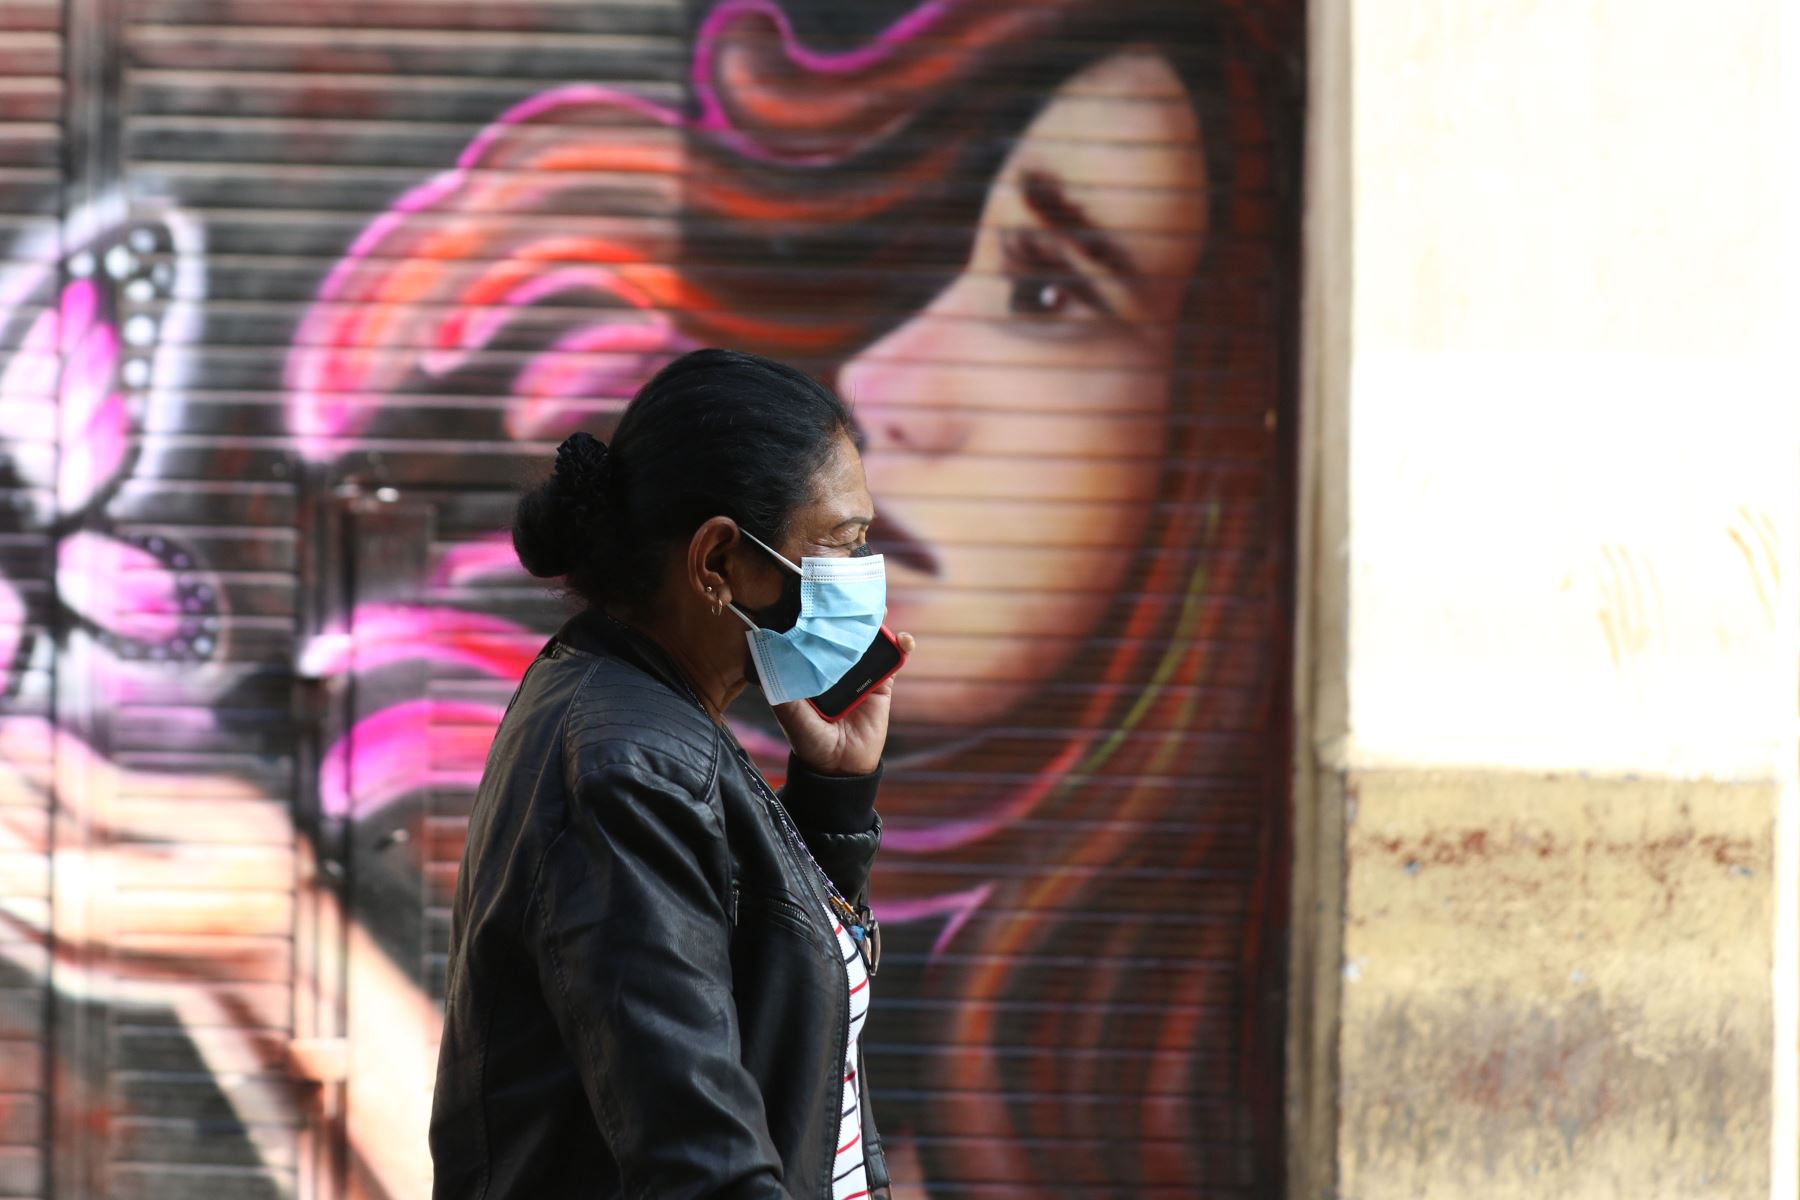 Una mujer camina por las calle de Lima , usando una mascarilla, como media de protección contra la Covid-19.
Foto: ANDINA/Eddy Ramos